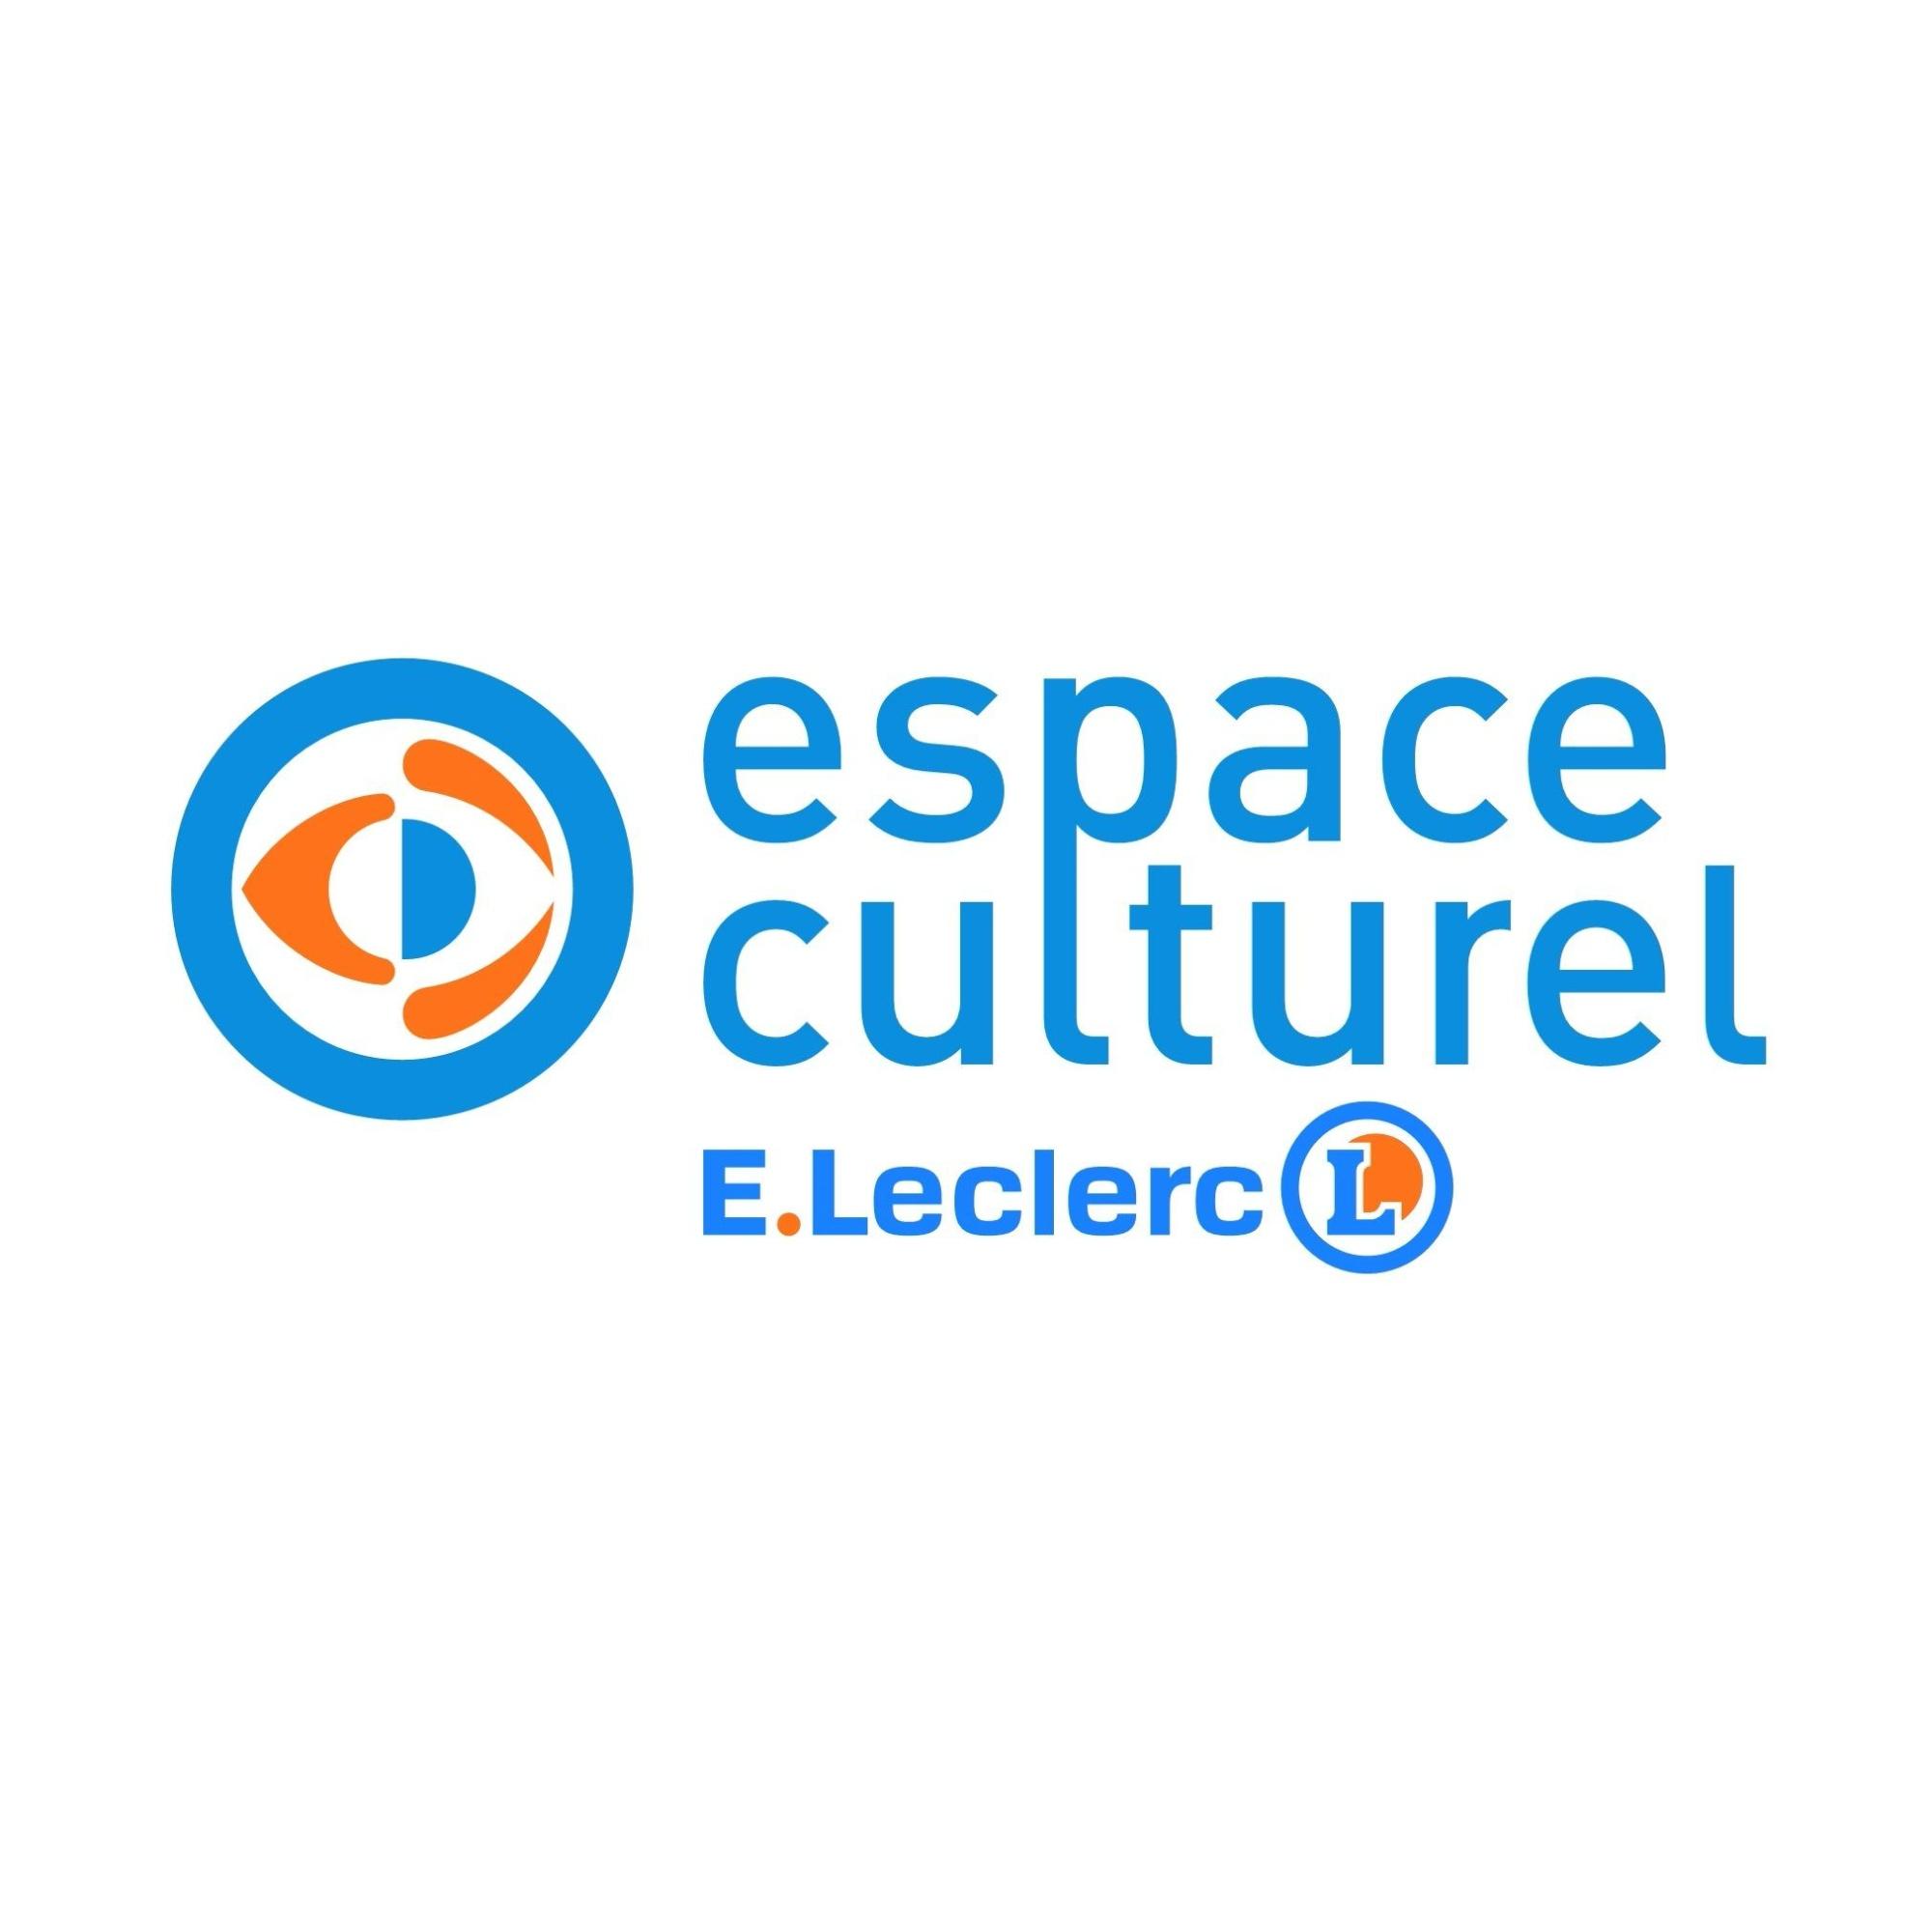 E.leclerc Espace Culturel Saint Louis